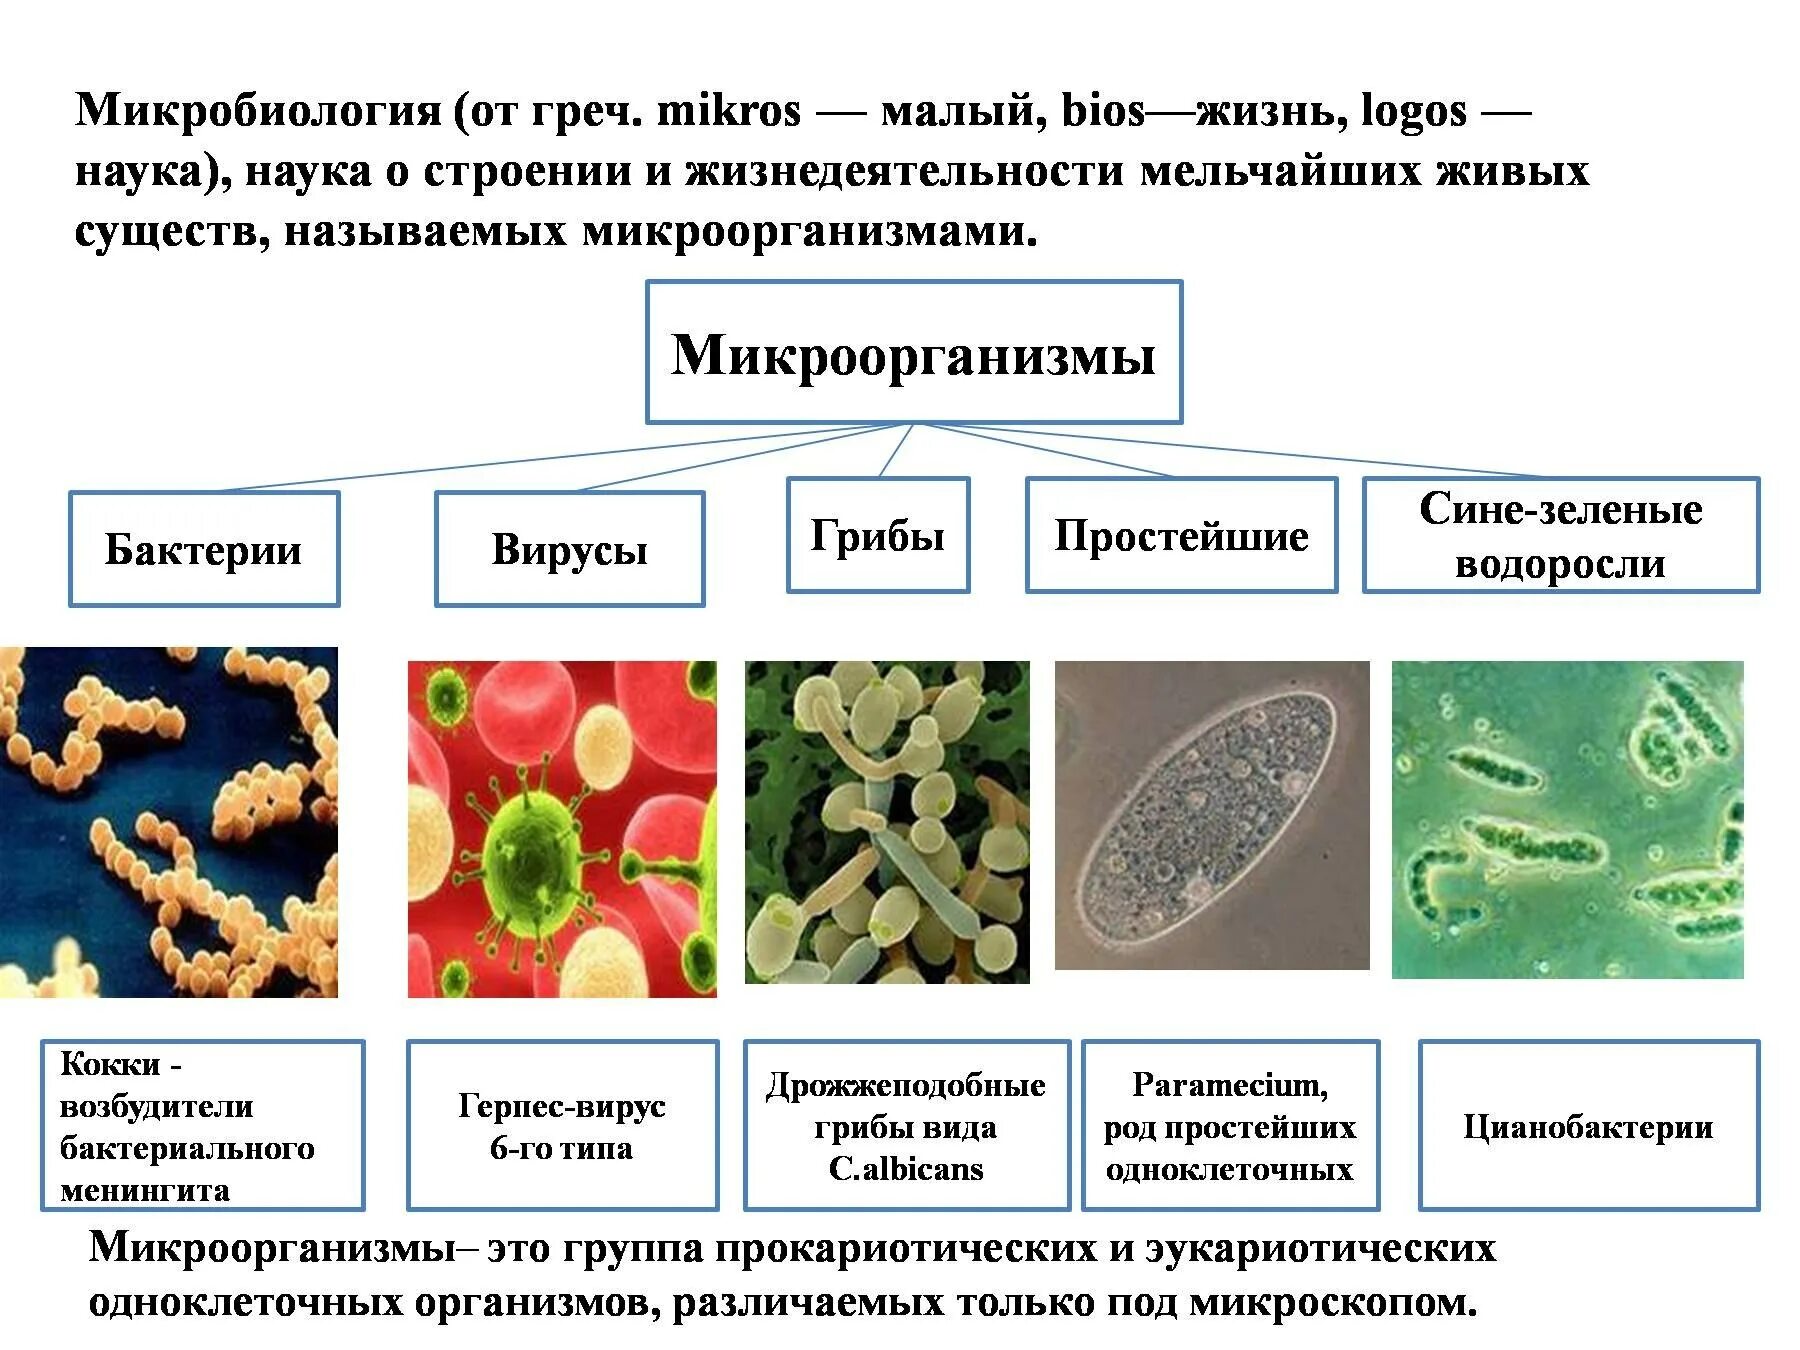 Бактерии вирусы грибы биология. Строение микробов микробиология. Бактерии и вирусы таблица микробиология. Вирусы бактерии протисты. Классификация бактерий и вирусов.